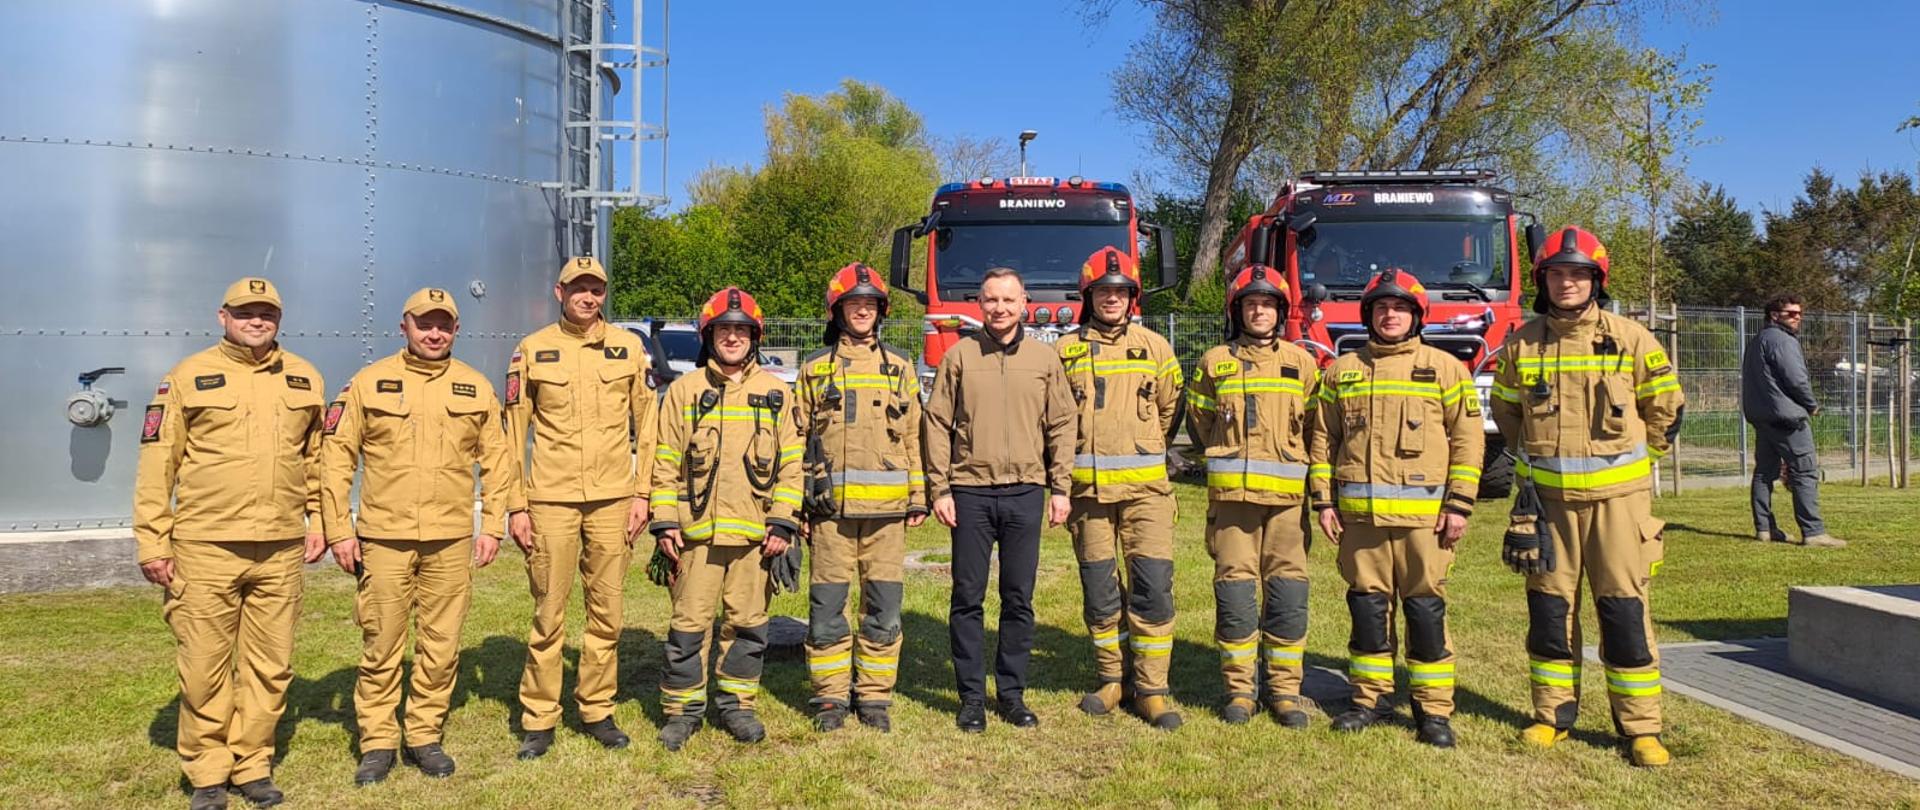 Na zdjęciu po środku stoi Prezydent Andrzej Duda. Obok niego z prawej i lewej strony strażacy w jasnych mundurach. Słonecznie. W tle samochody strażackie.